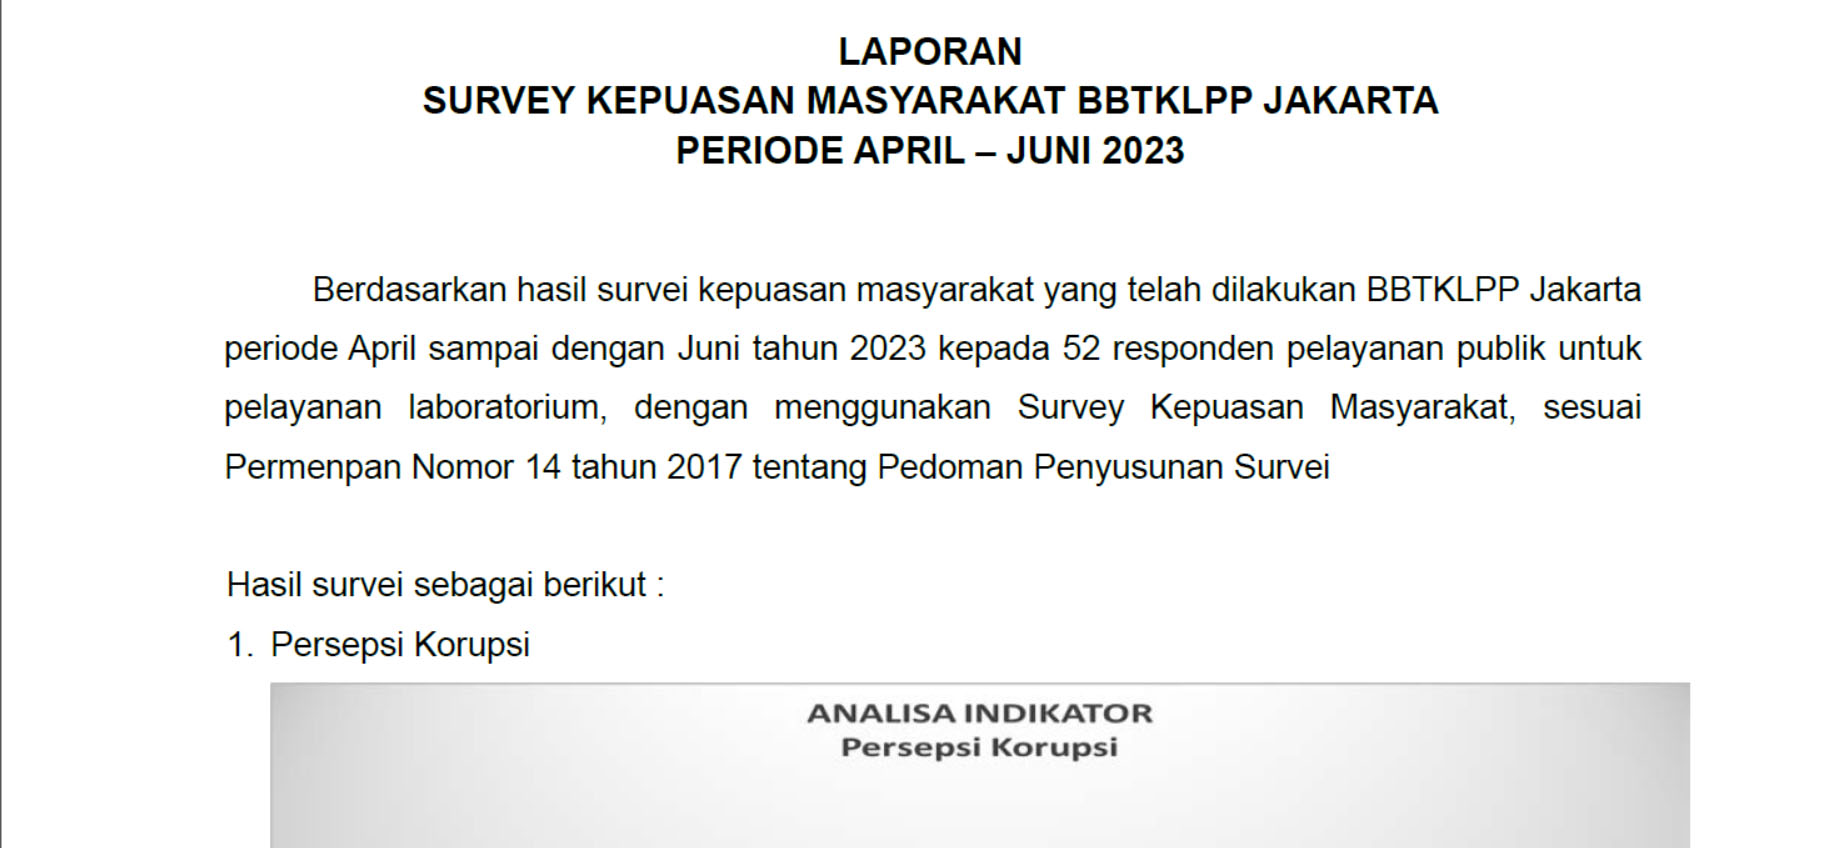 LAPORAN TW2 SURVEY KEPUASAN MASYARAKAT BBTKLPP JAKARTA PERIODE APRIL – JUNI 2023